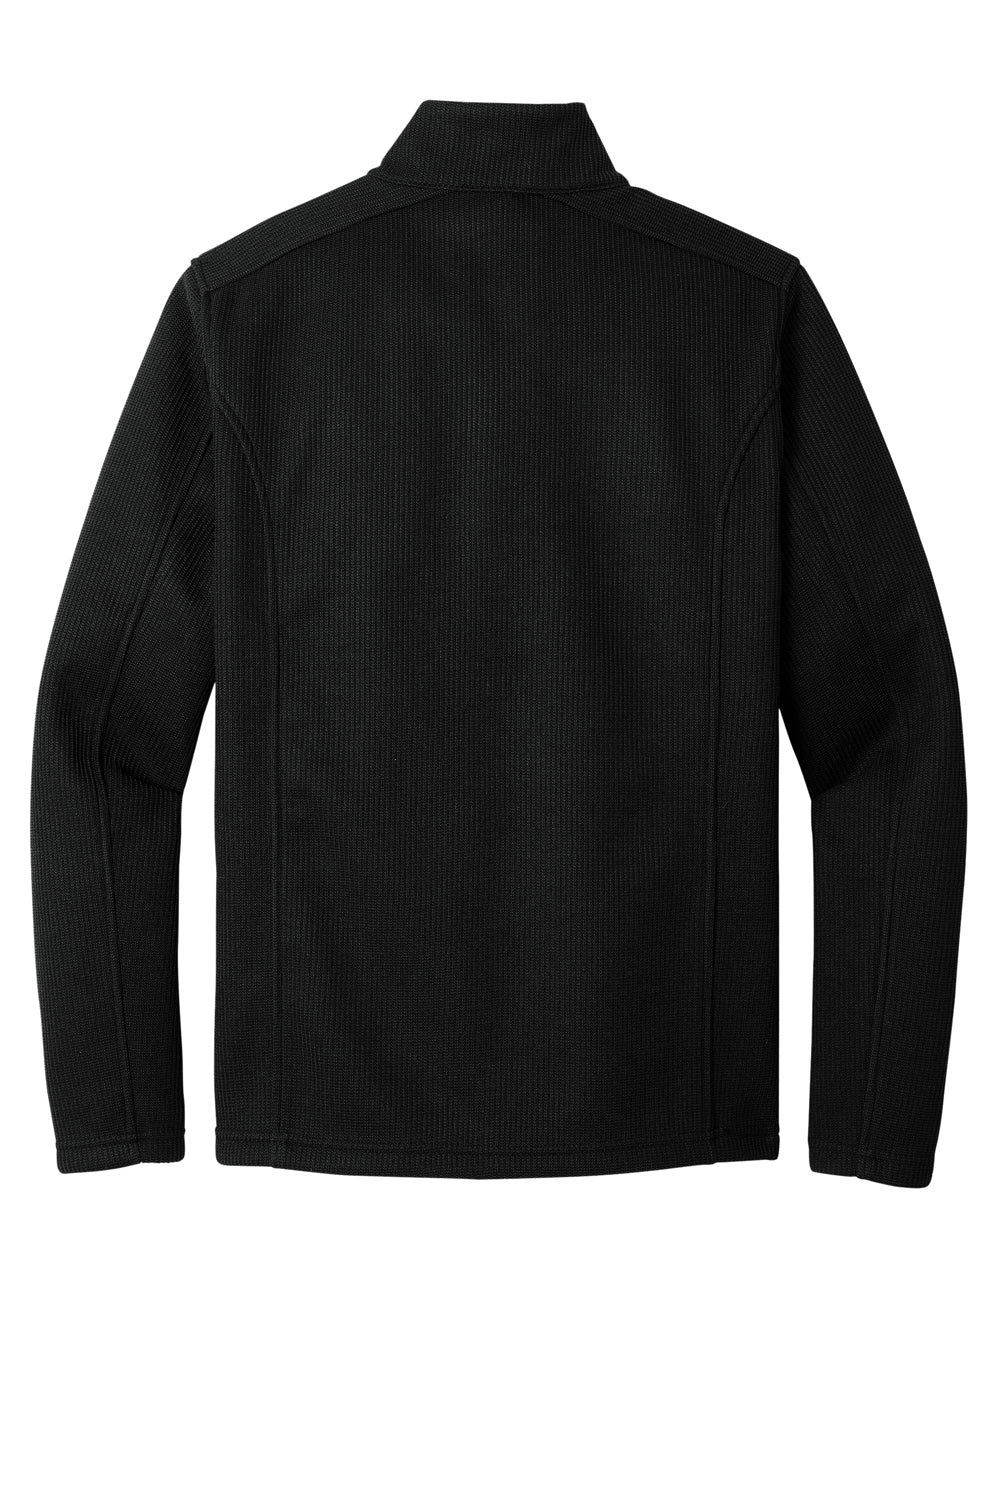 Ogio OG729 Mens Grit Fleece 1/4 Zip Sweatshirt Blacktop Flat Back